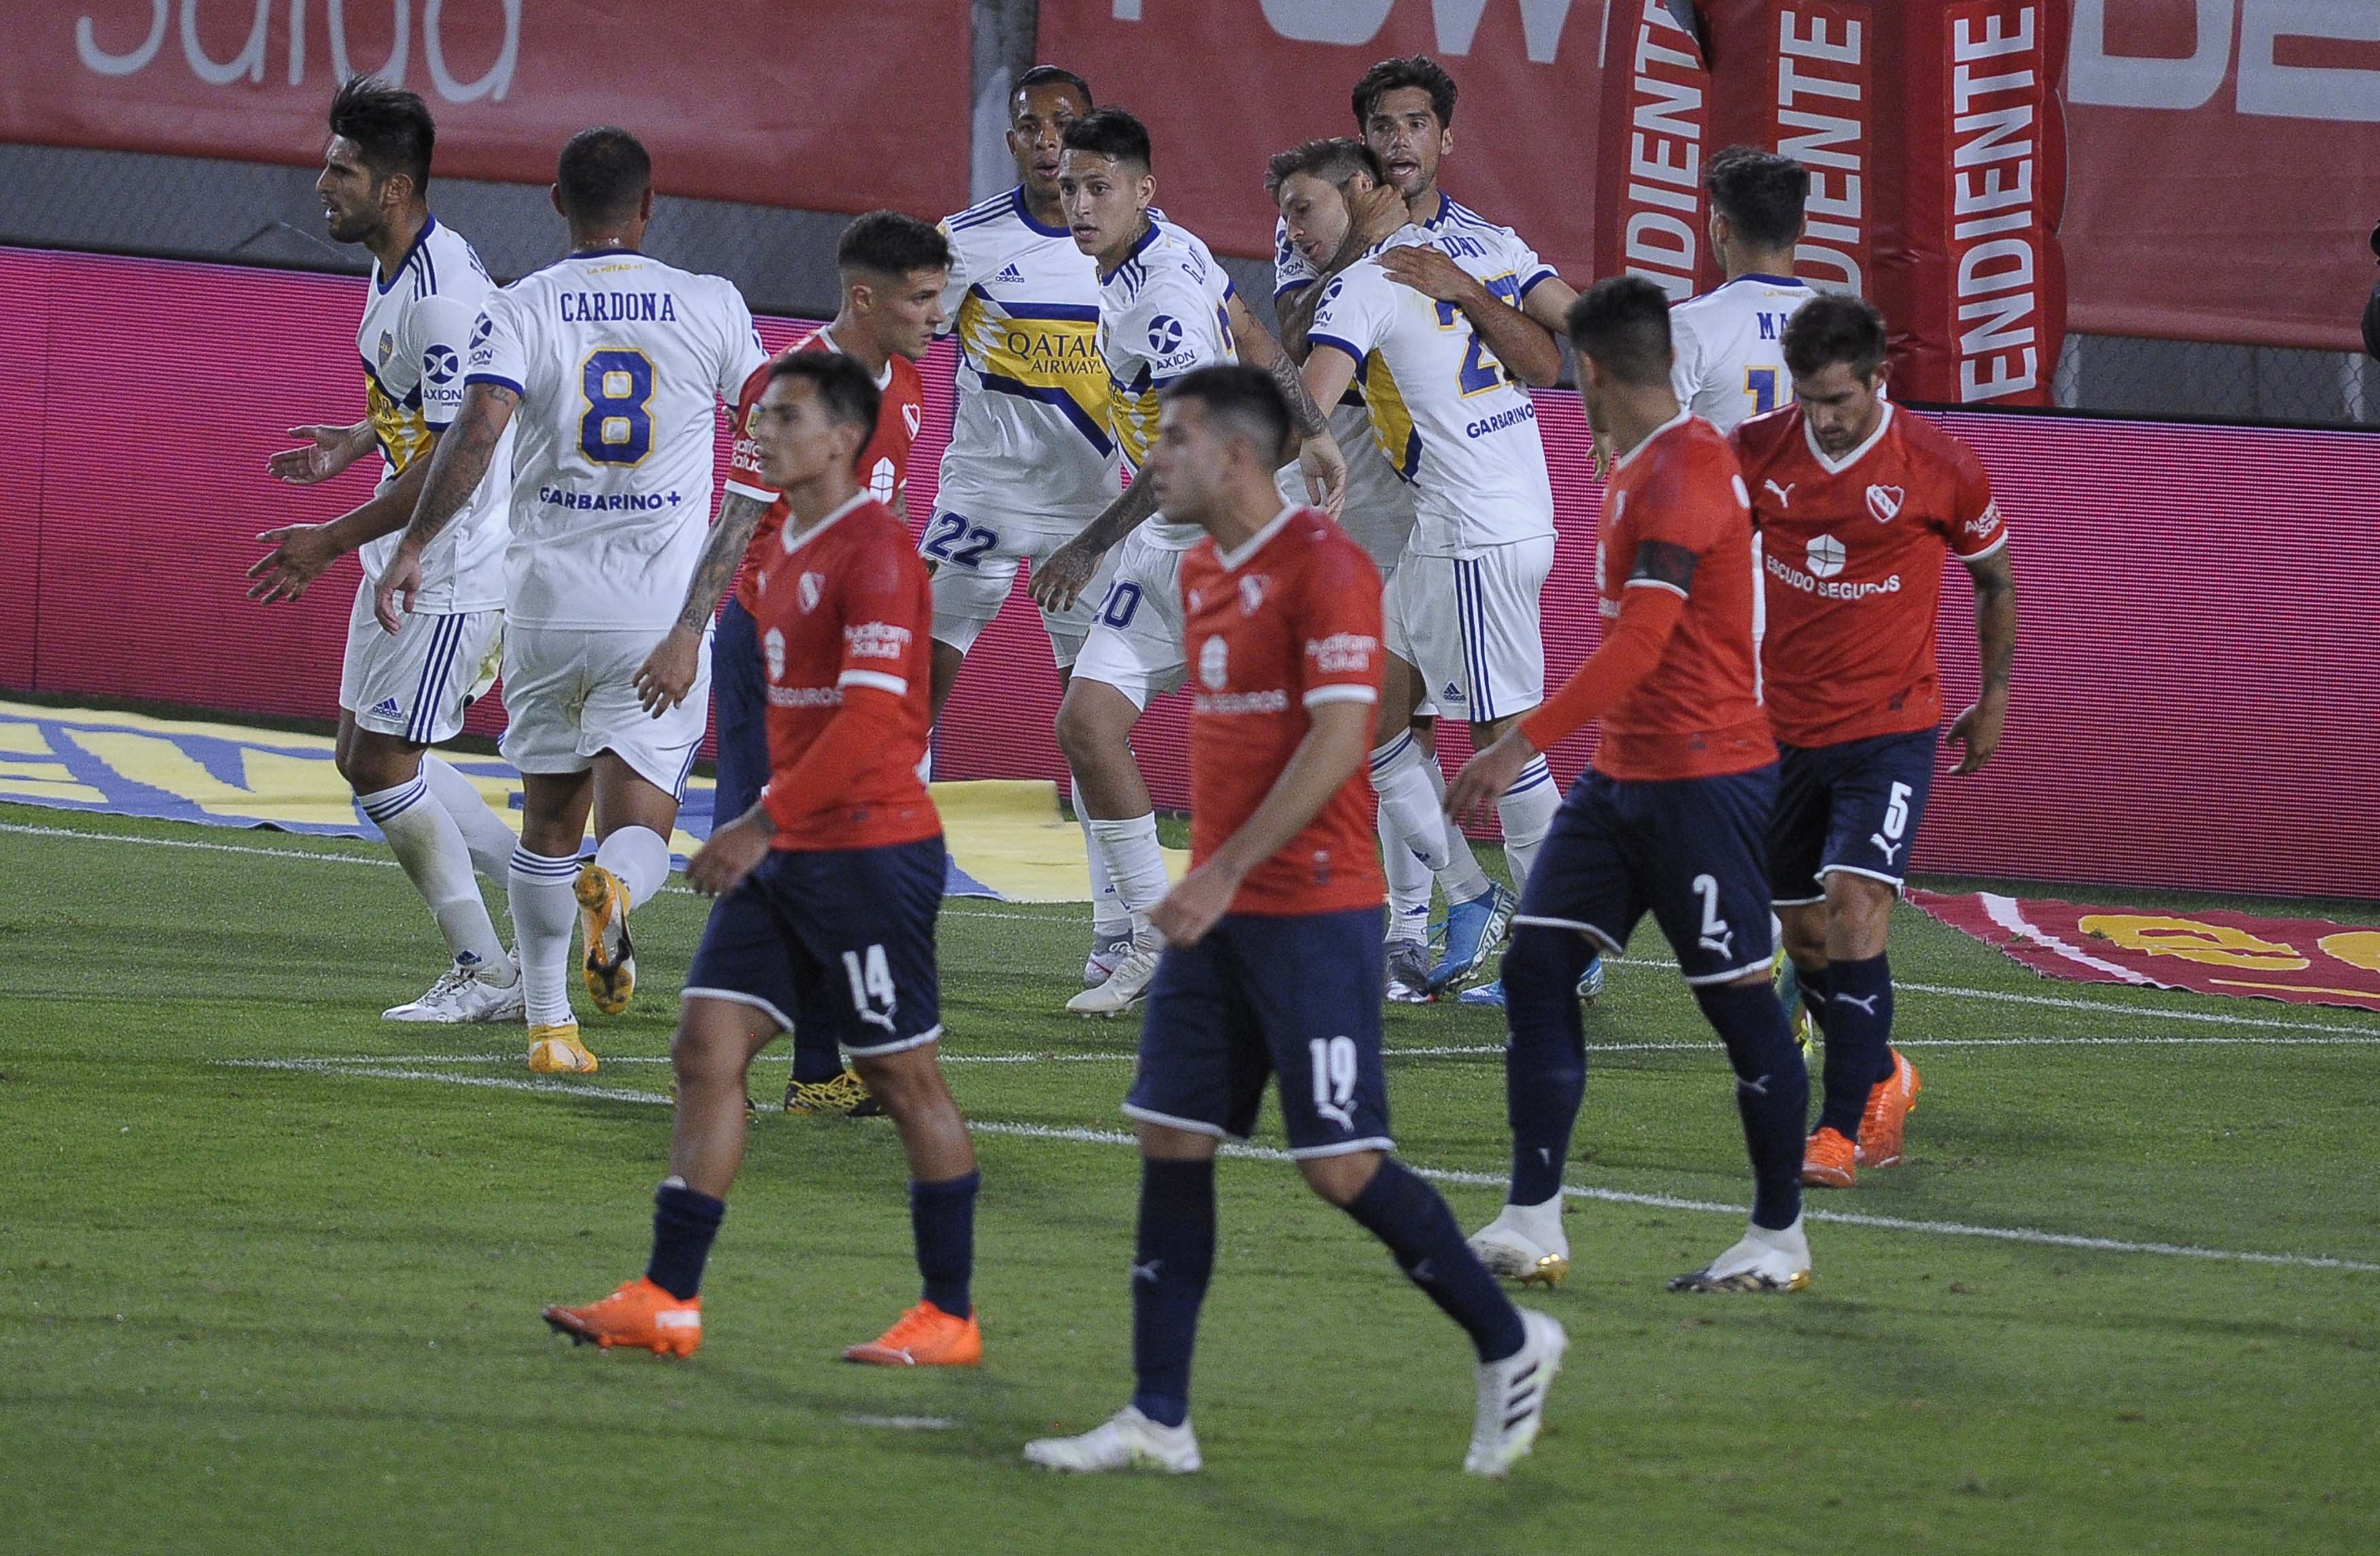 Independiente se quedó, bajó la intensidad y Boca se recuperó. Lo terminó ganando con goles de Soldano y Cardona. FOTO: JAVIER GONZALEZ TOLEDO  AGENCIAS ARGRA